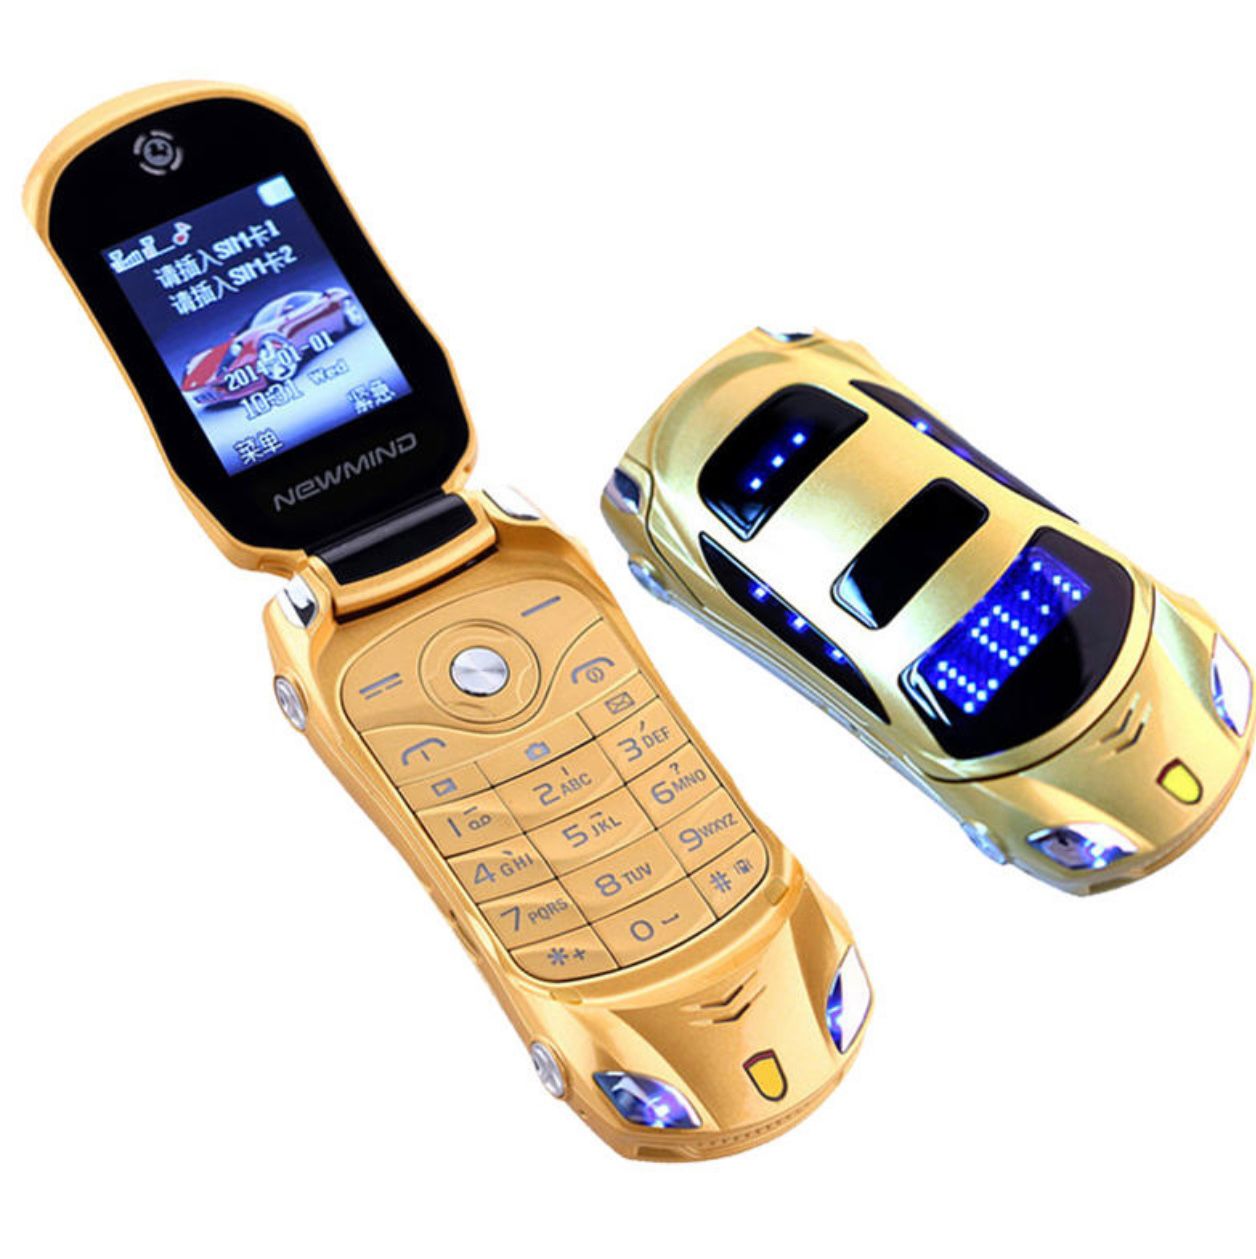 Раскладной телефон в виде Машинки Sebar золотой цвет, купить в Москве, цены  в интернет-магазинах на Мегамаркет